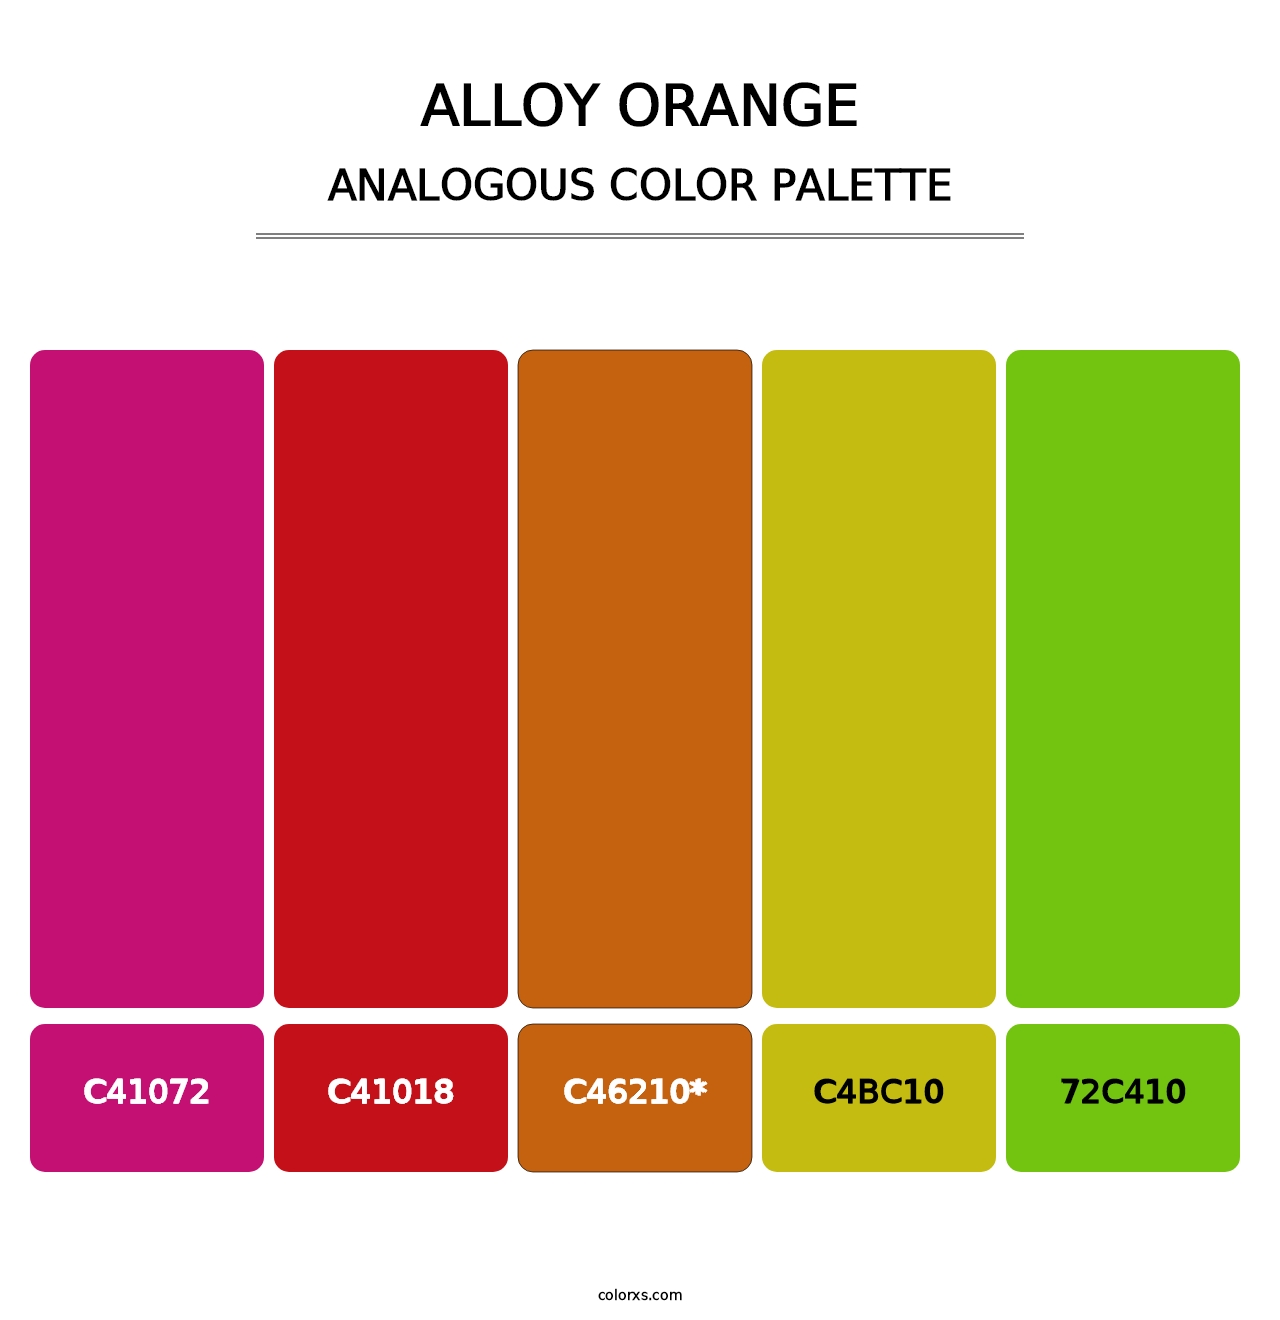 Alloy Orange - Analogous Color Palette